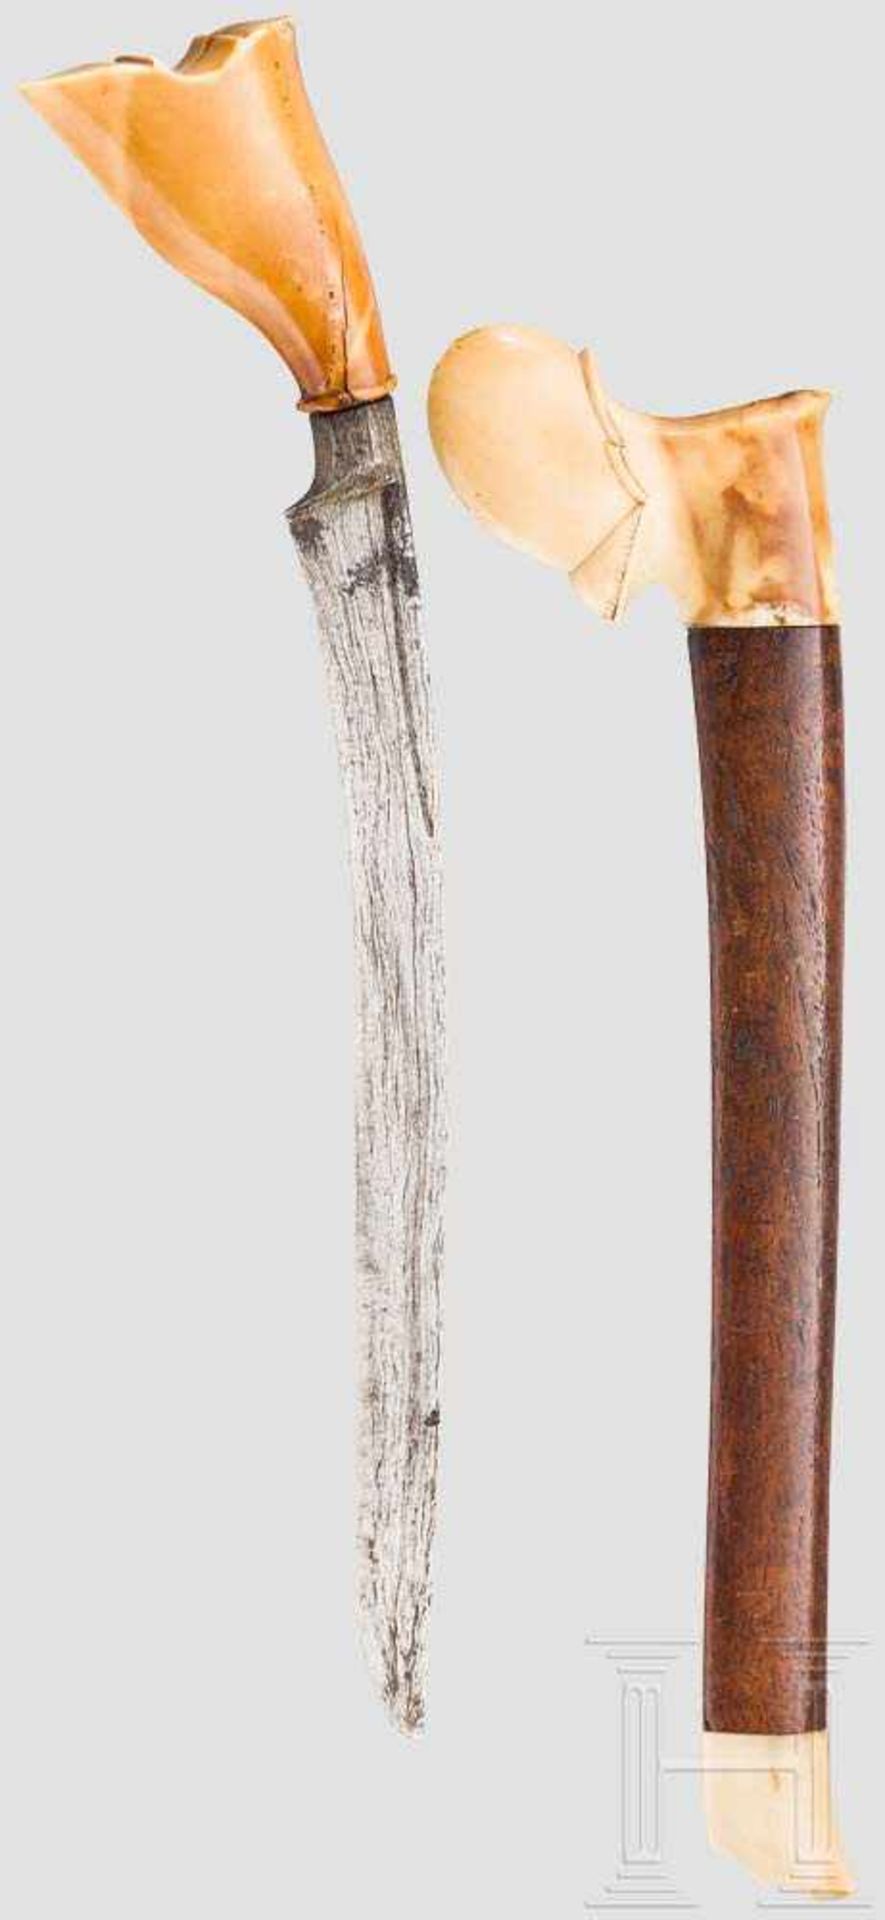 Pedang, Sumatra, um 1900 Gekrümmte und schmale Damastklinge mit kräftigem, am Knauf verbreiterten